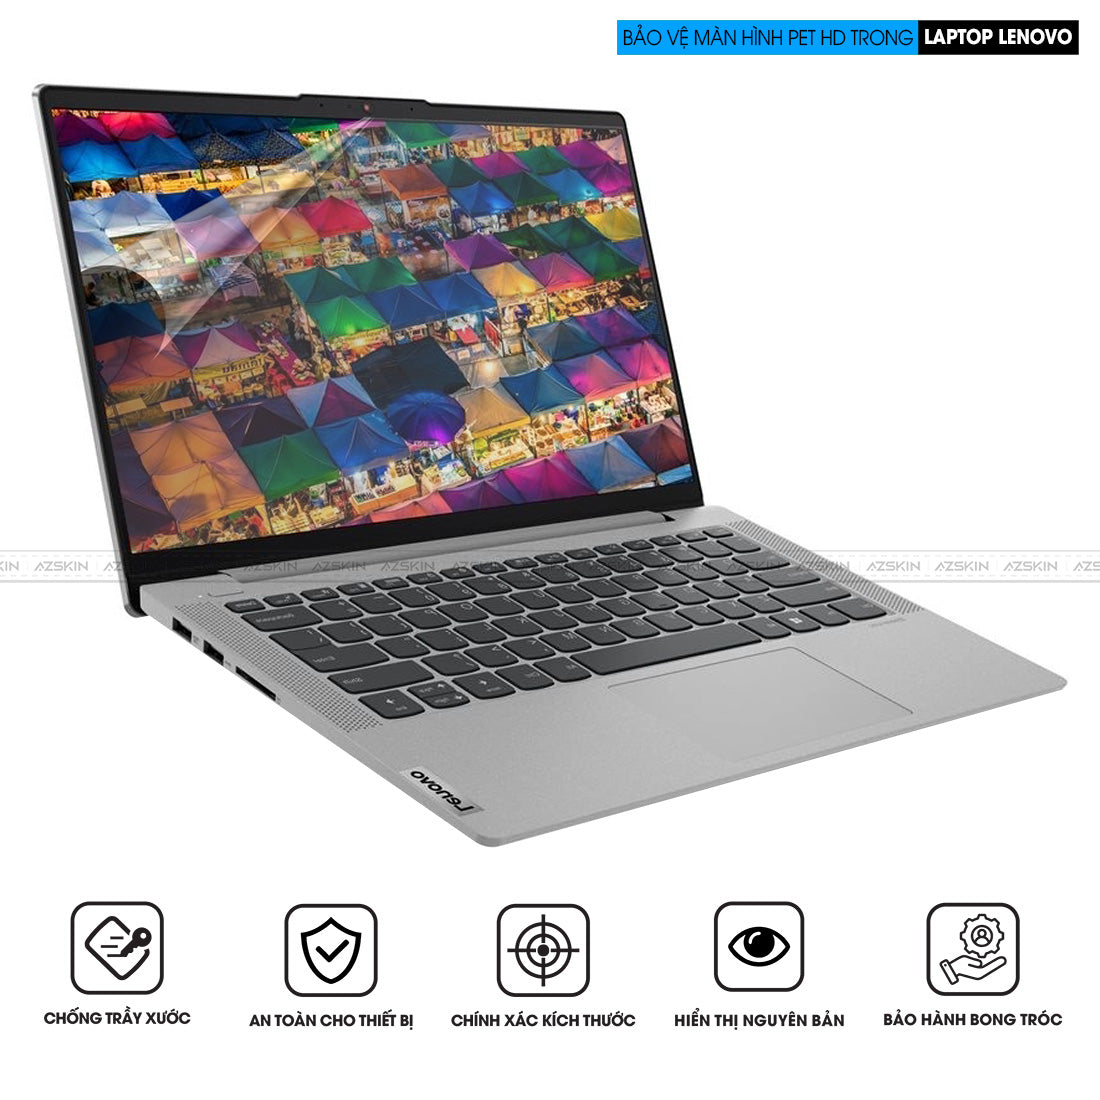 Miếng dán màn hình laptop Lenovo chống trầy xước PET HD